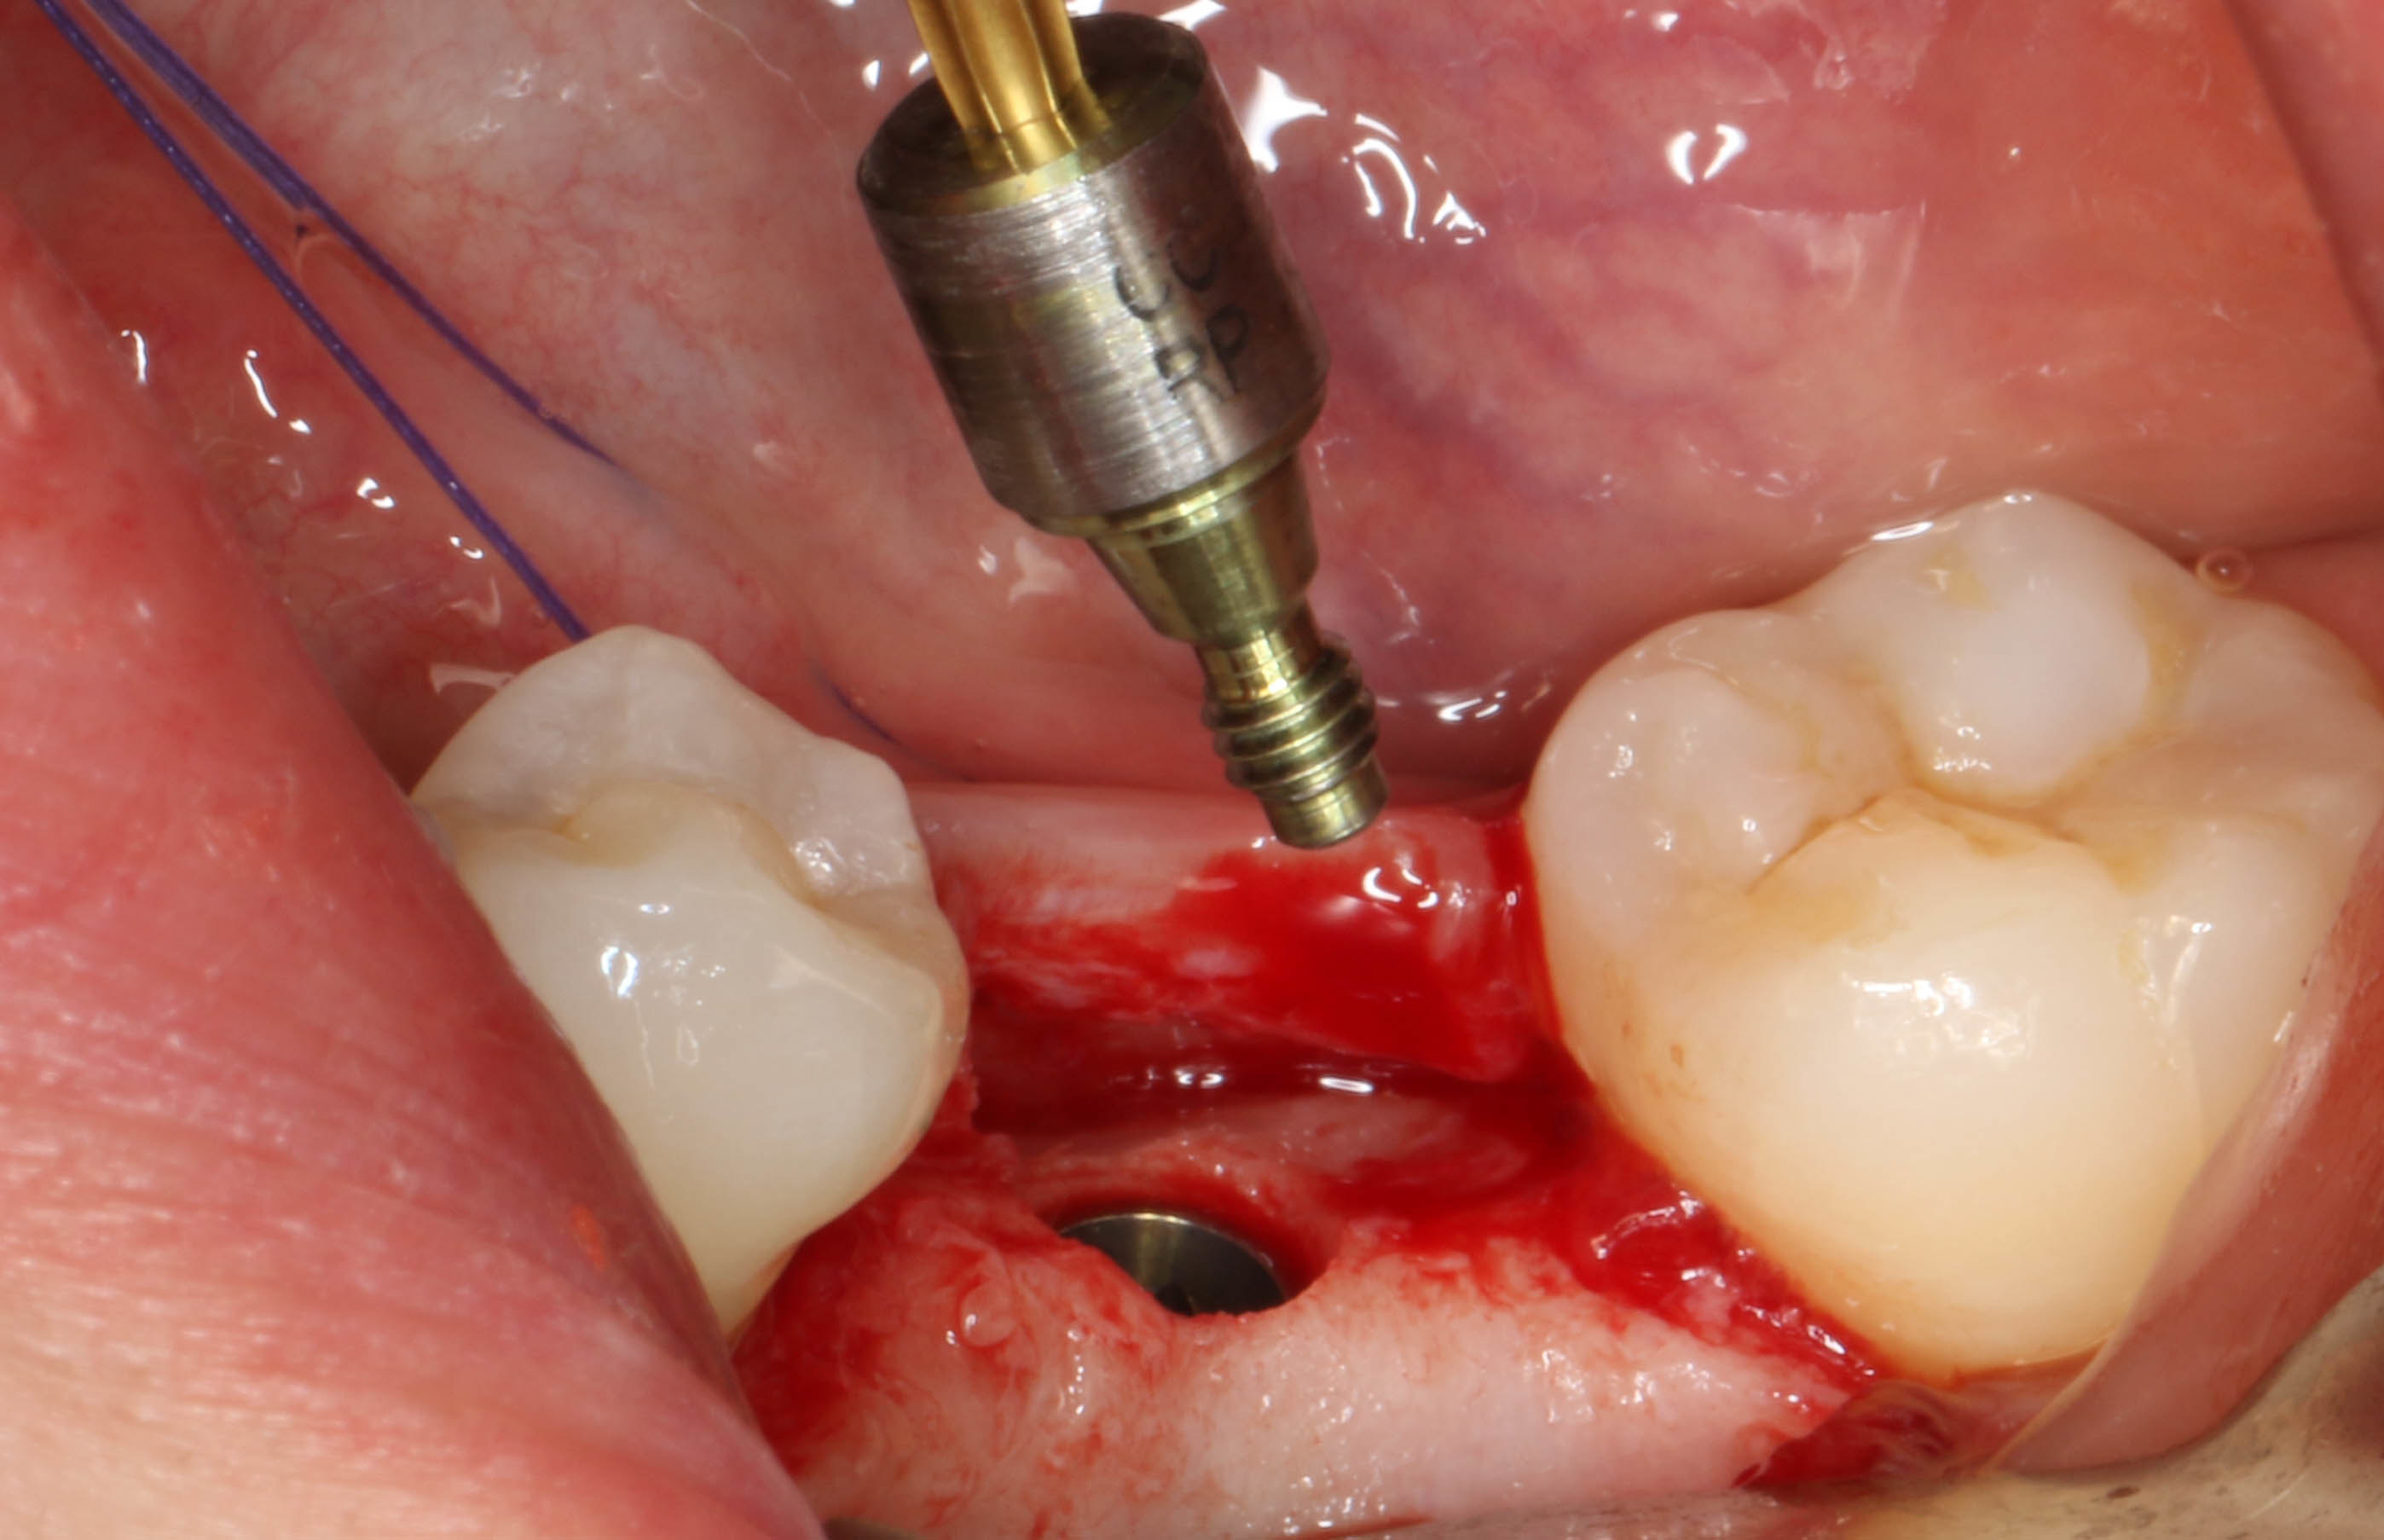 可见植体顶端颊侧牙槽骨较多,存在愈合基台不能完全就位的阻力